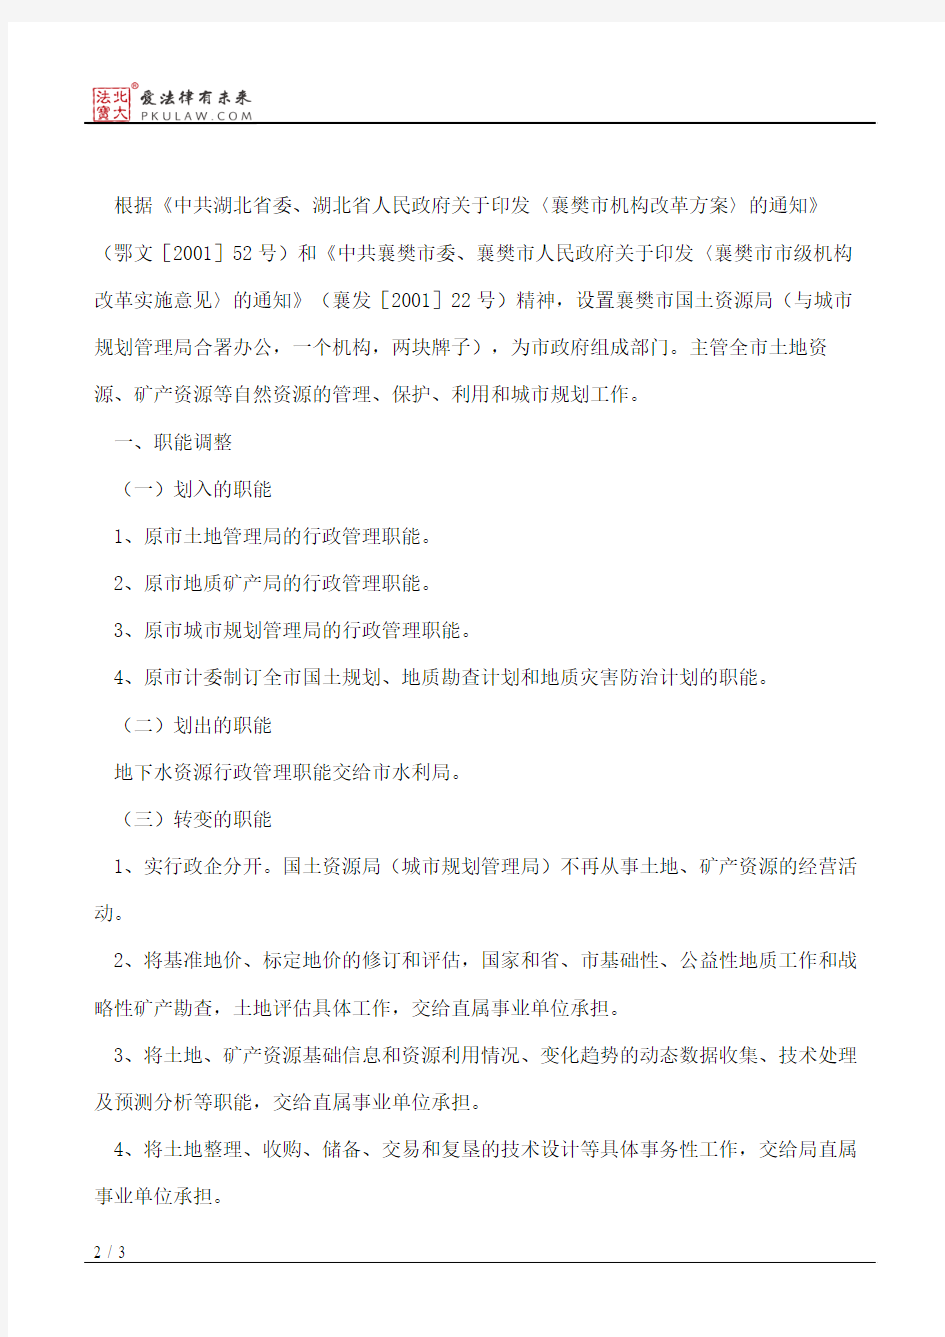 襄樊市人民政府办公室关于印发襄樊市国土资源局(城市规划管理局)